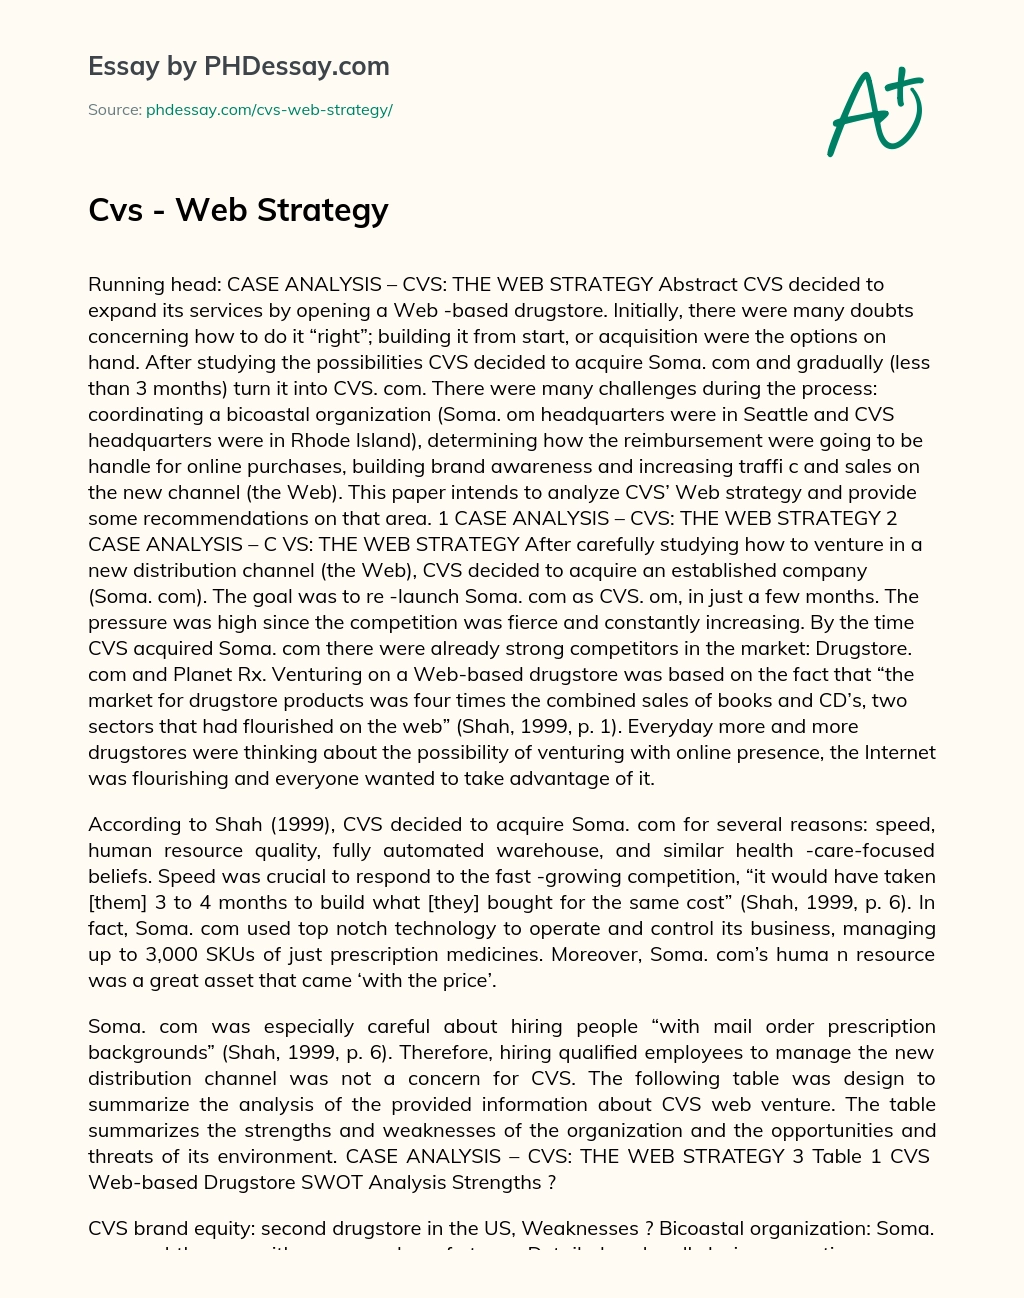 Cvs – Web Strategy essay